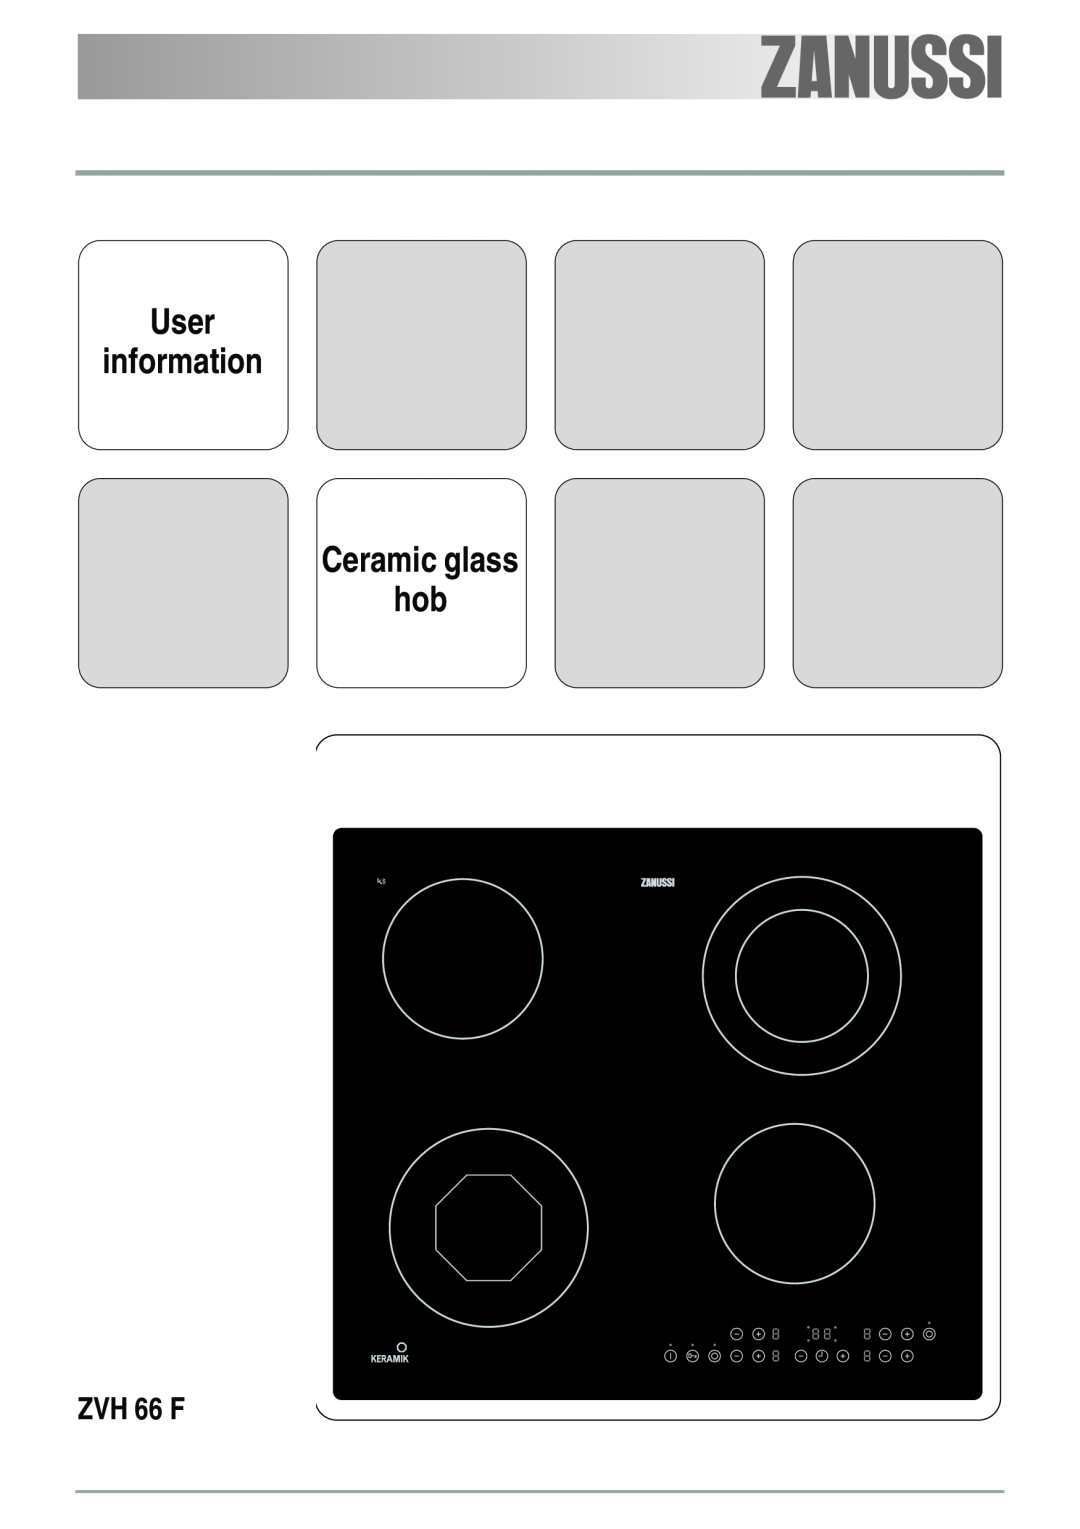 Zanussi ZVH 66 F manual User information Ceramic glass hob 